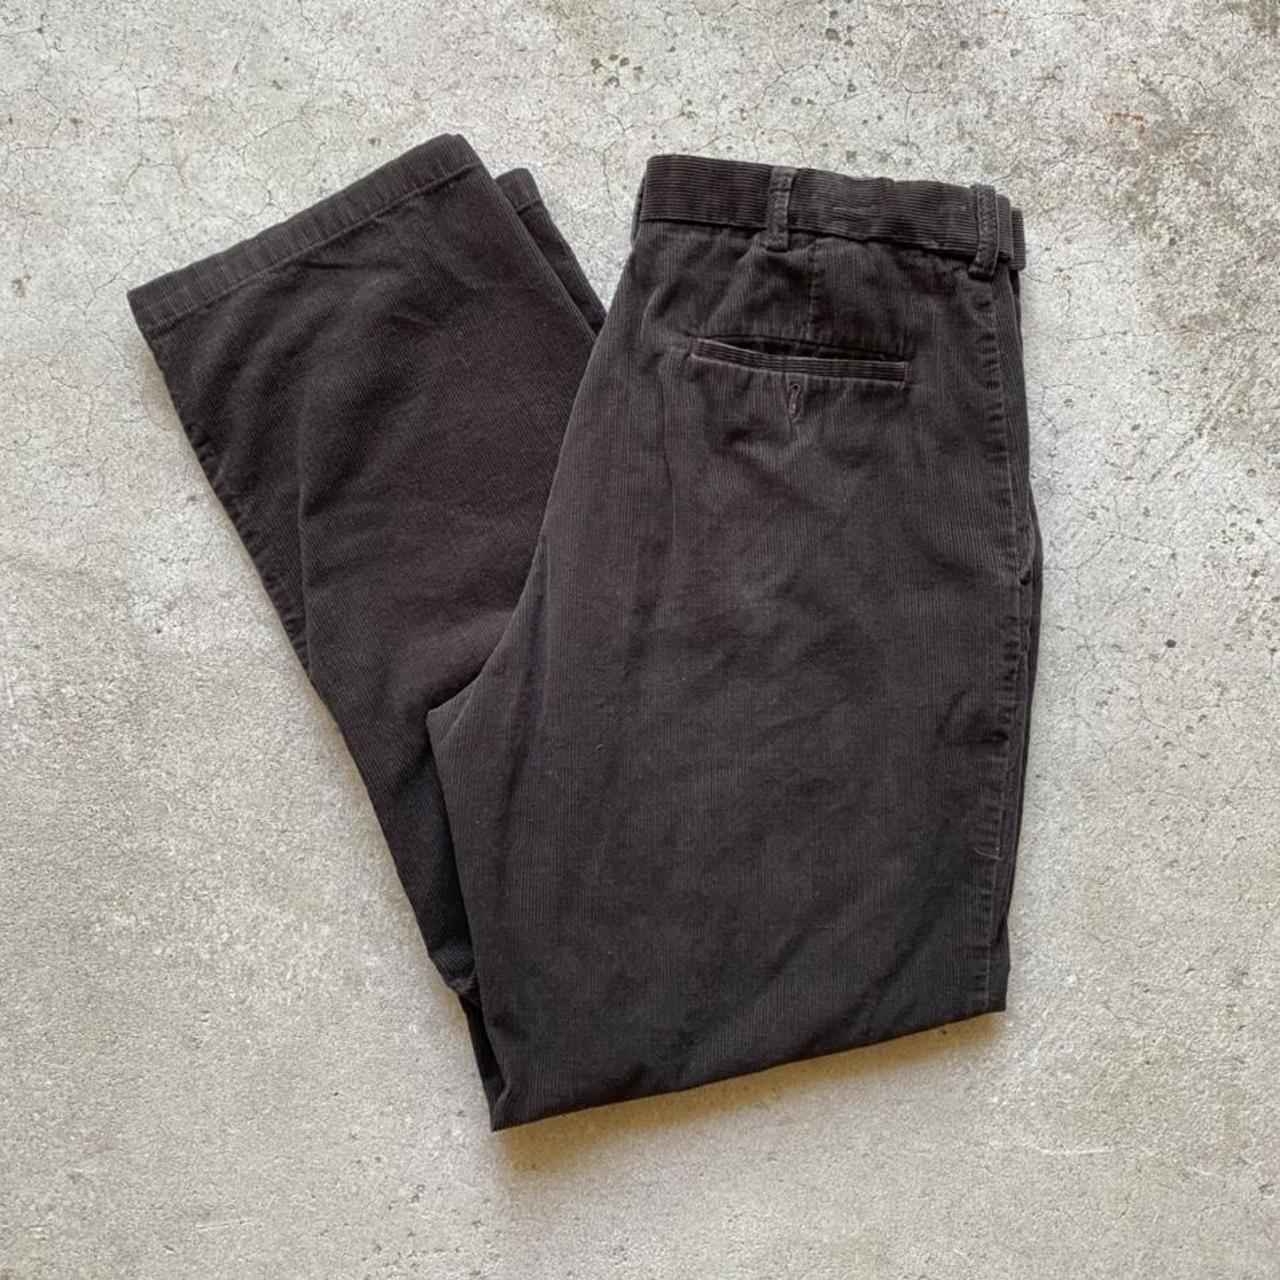 Beautiful pair of brown corduroy pants Size 36x32... - Depop